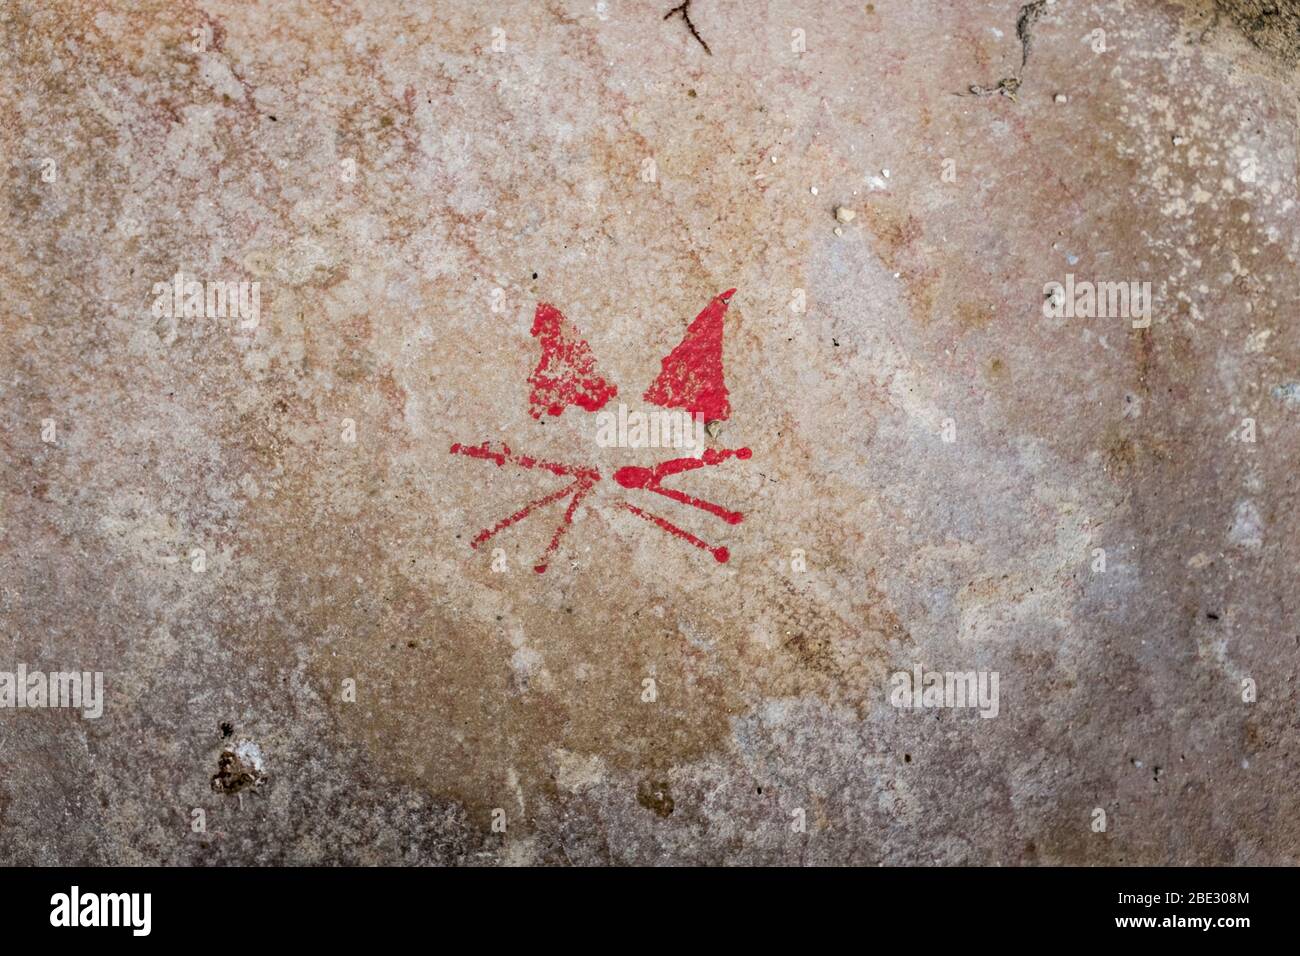 Das französische Dorf La Romieu ist berühmt für seine Verbindung mit Katzen und diese stilisierte rot bemalte Katze ist an einer Wand im Dorf. Stockfoto